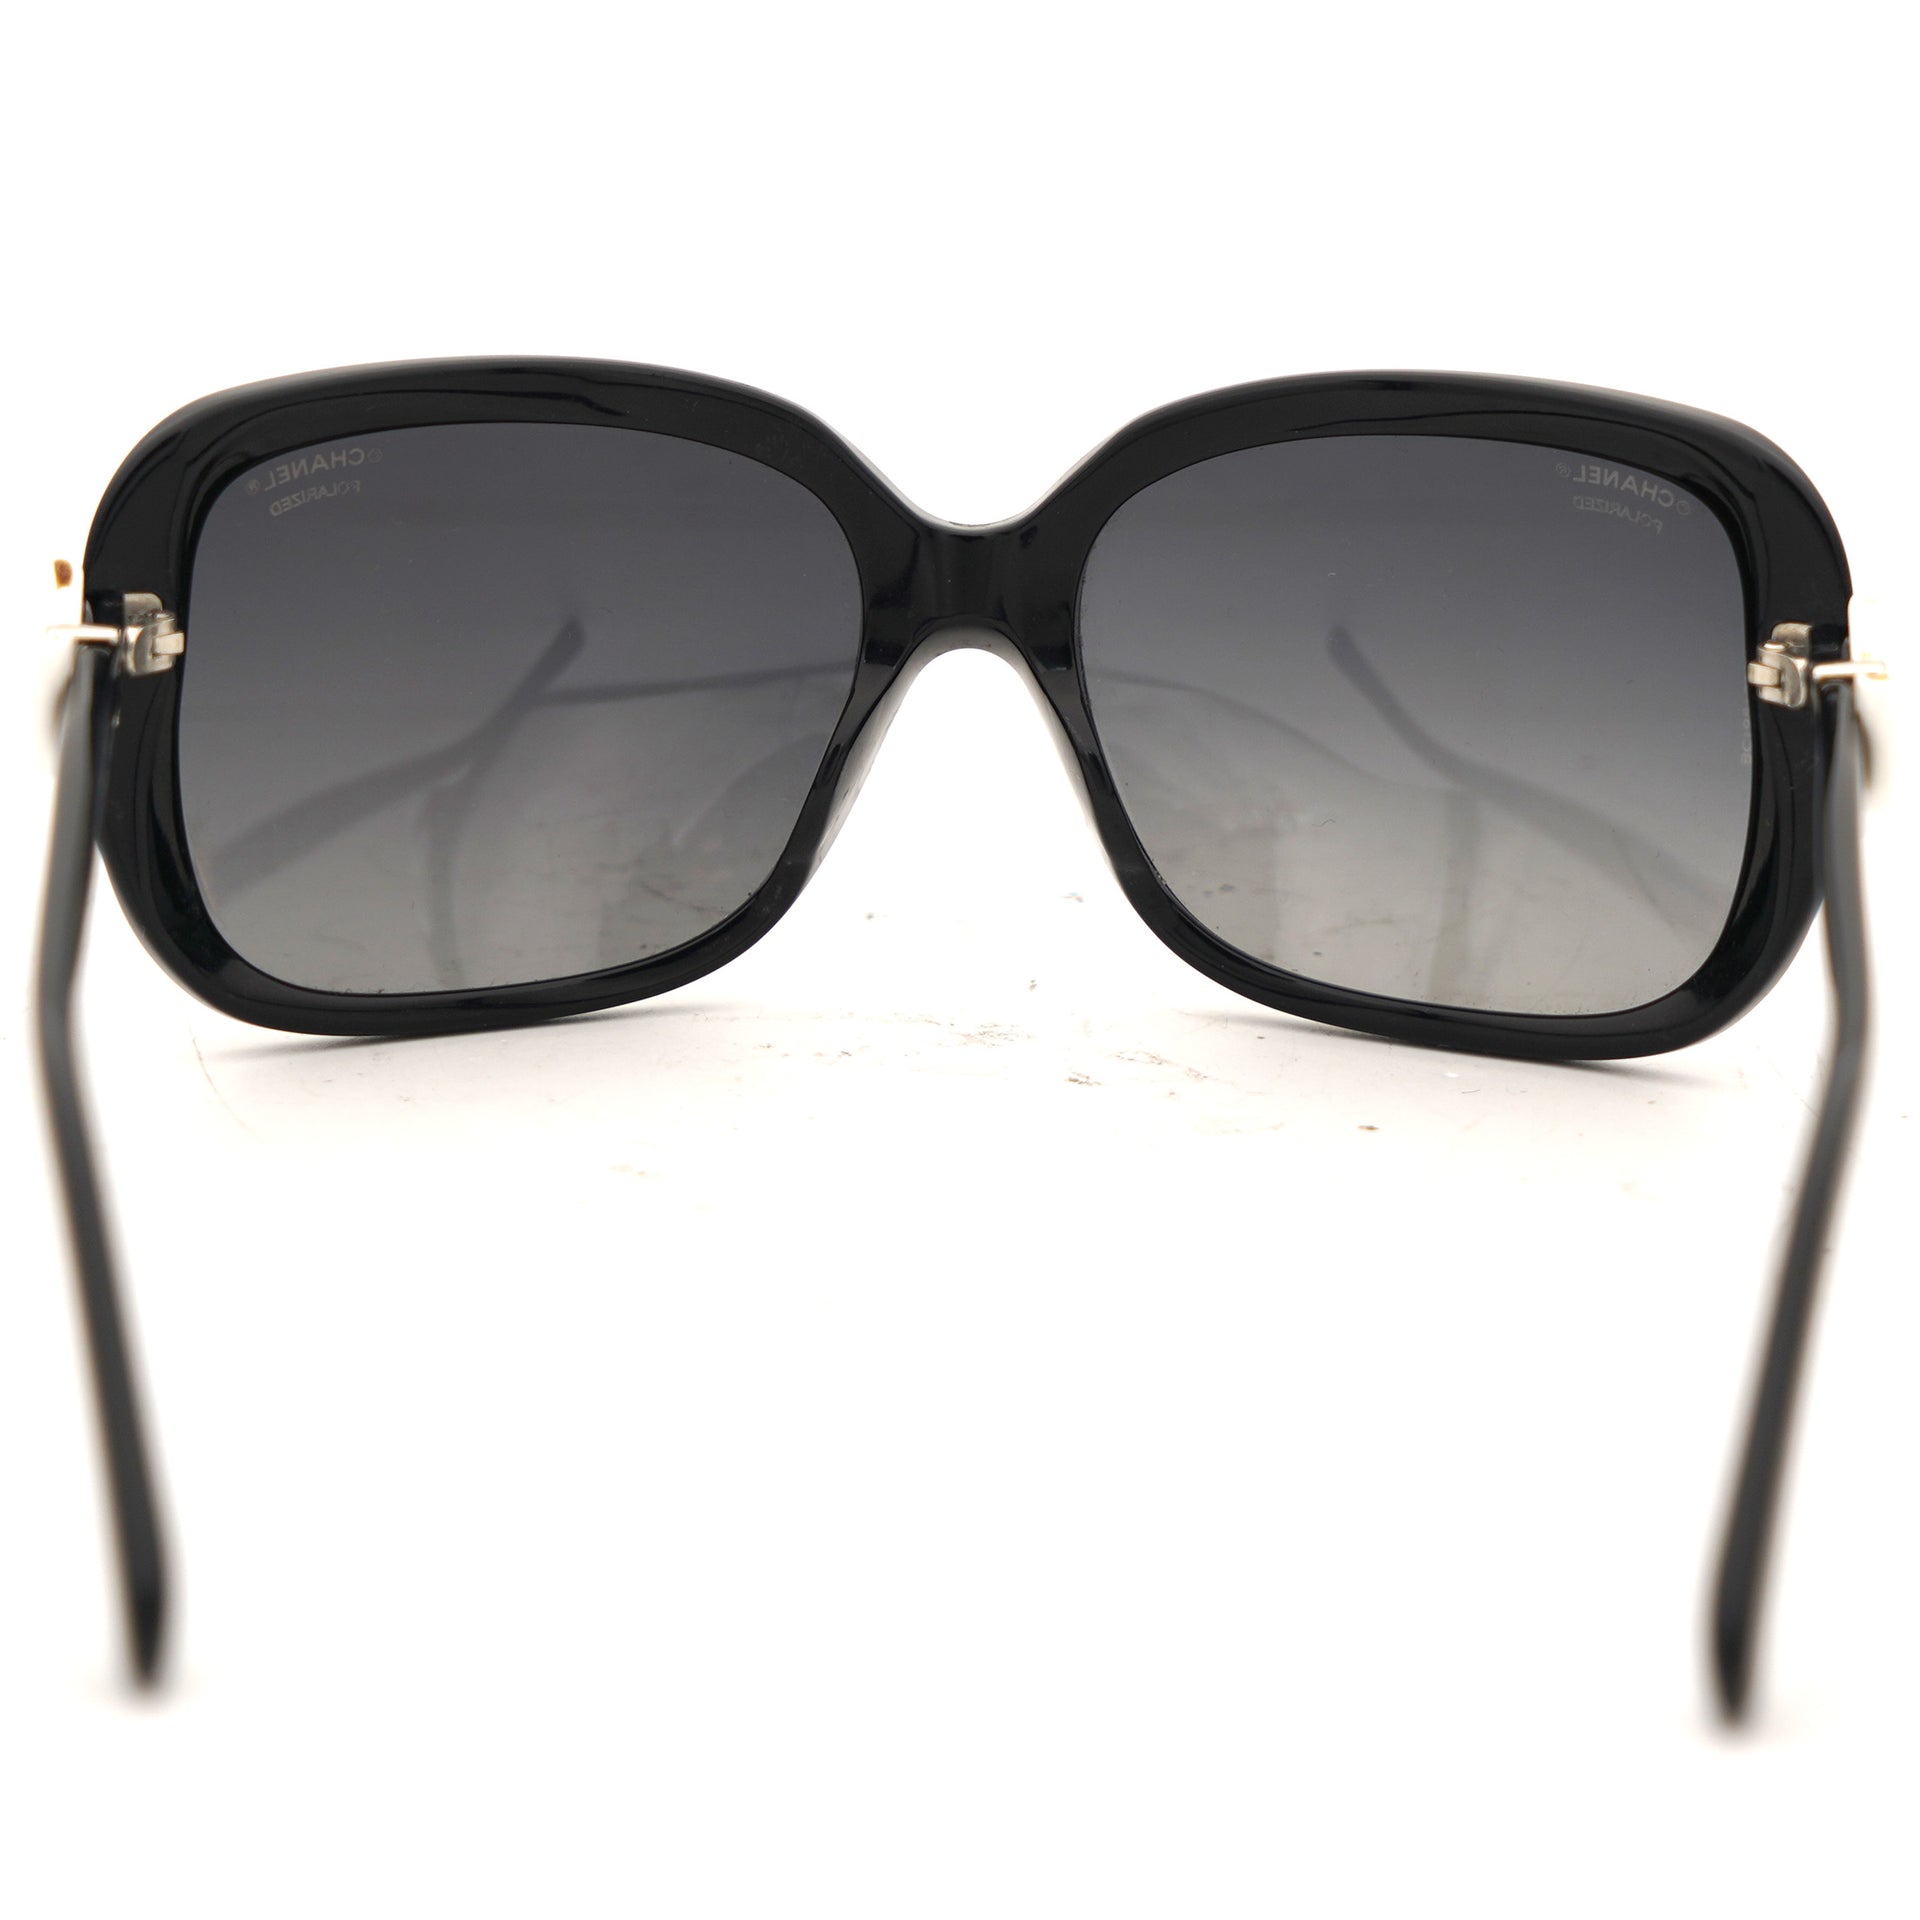 Black Acetate CC Bow Square Sunglasses